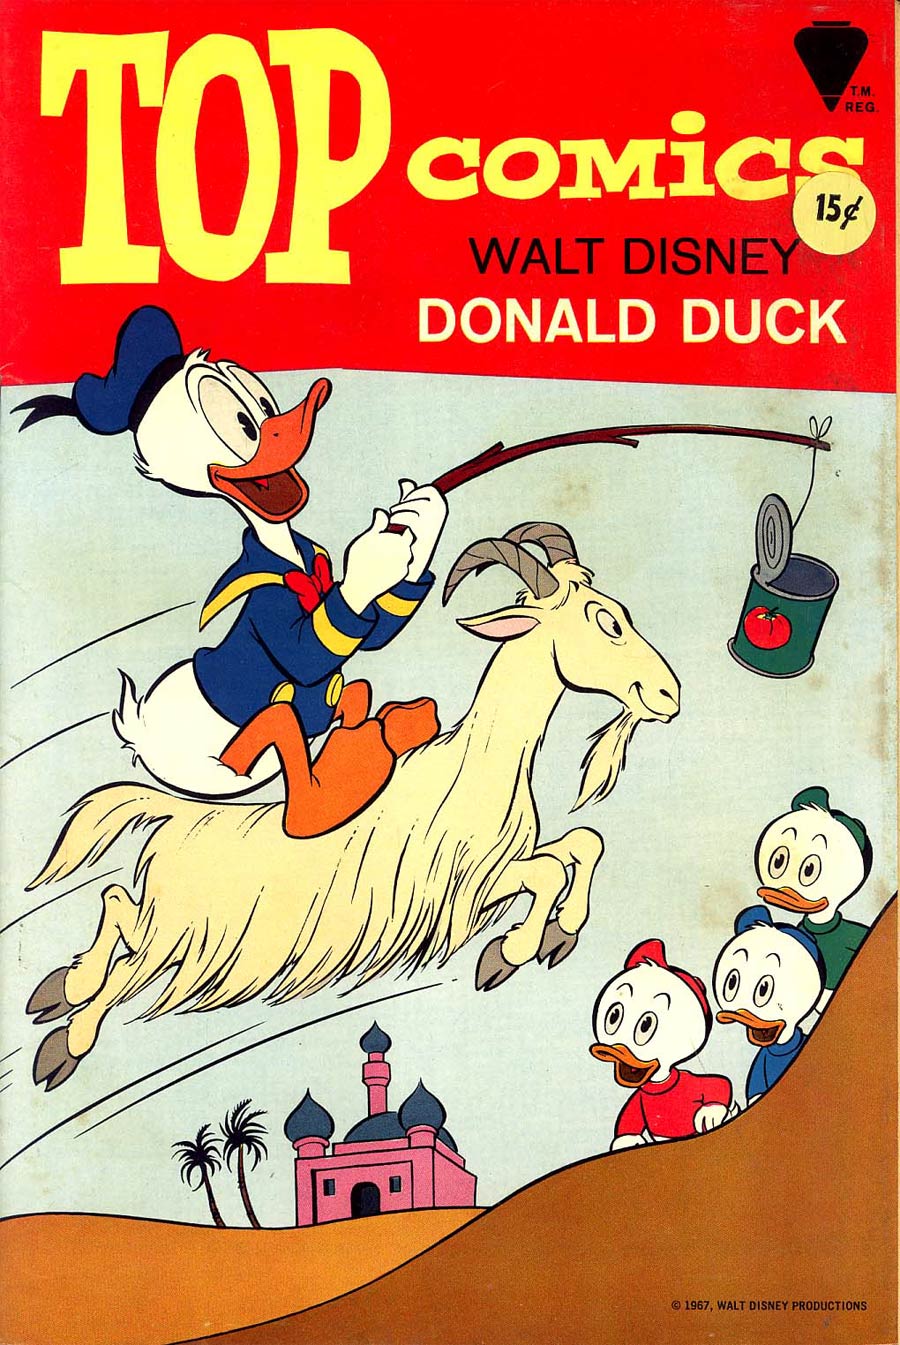 Top Comics #2 Donald Duck